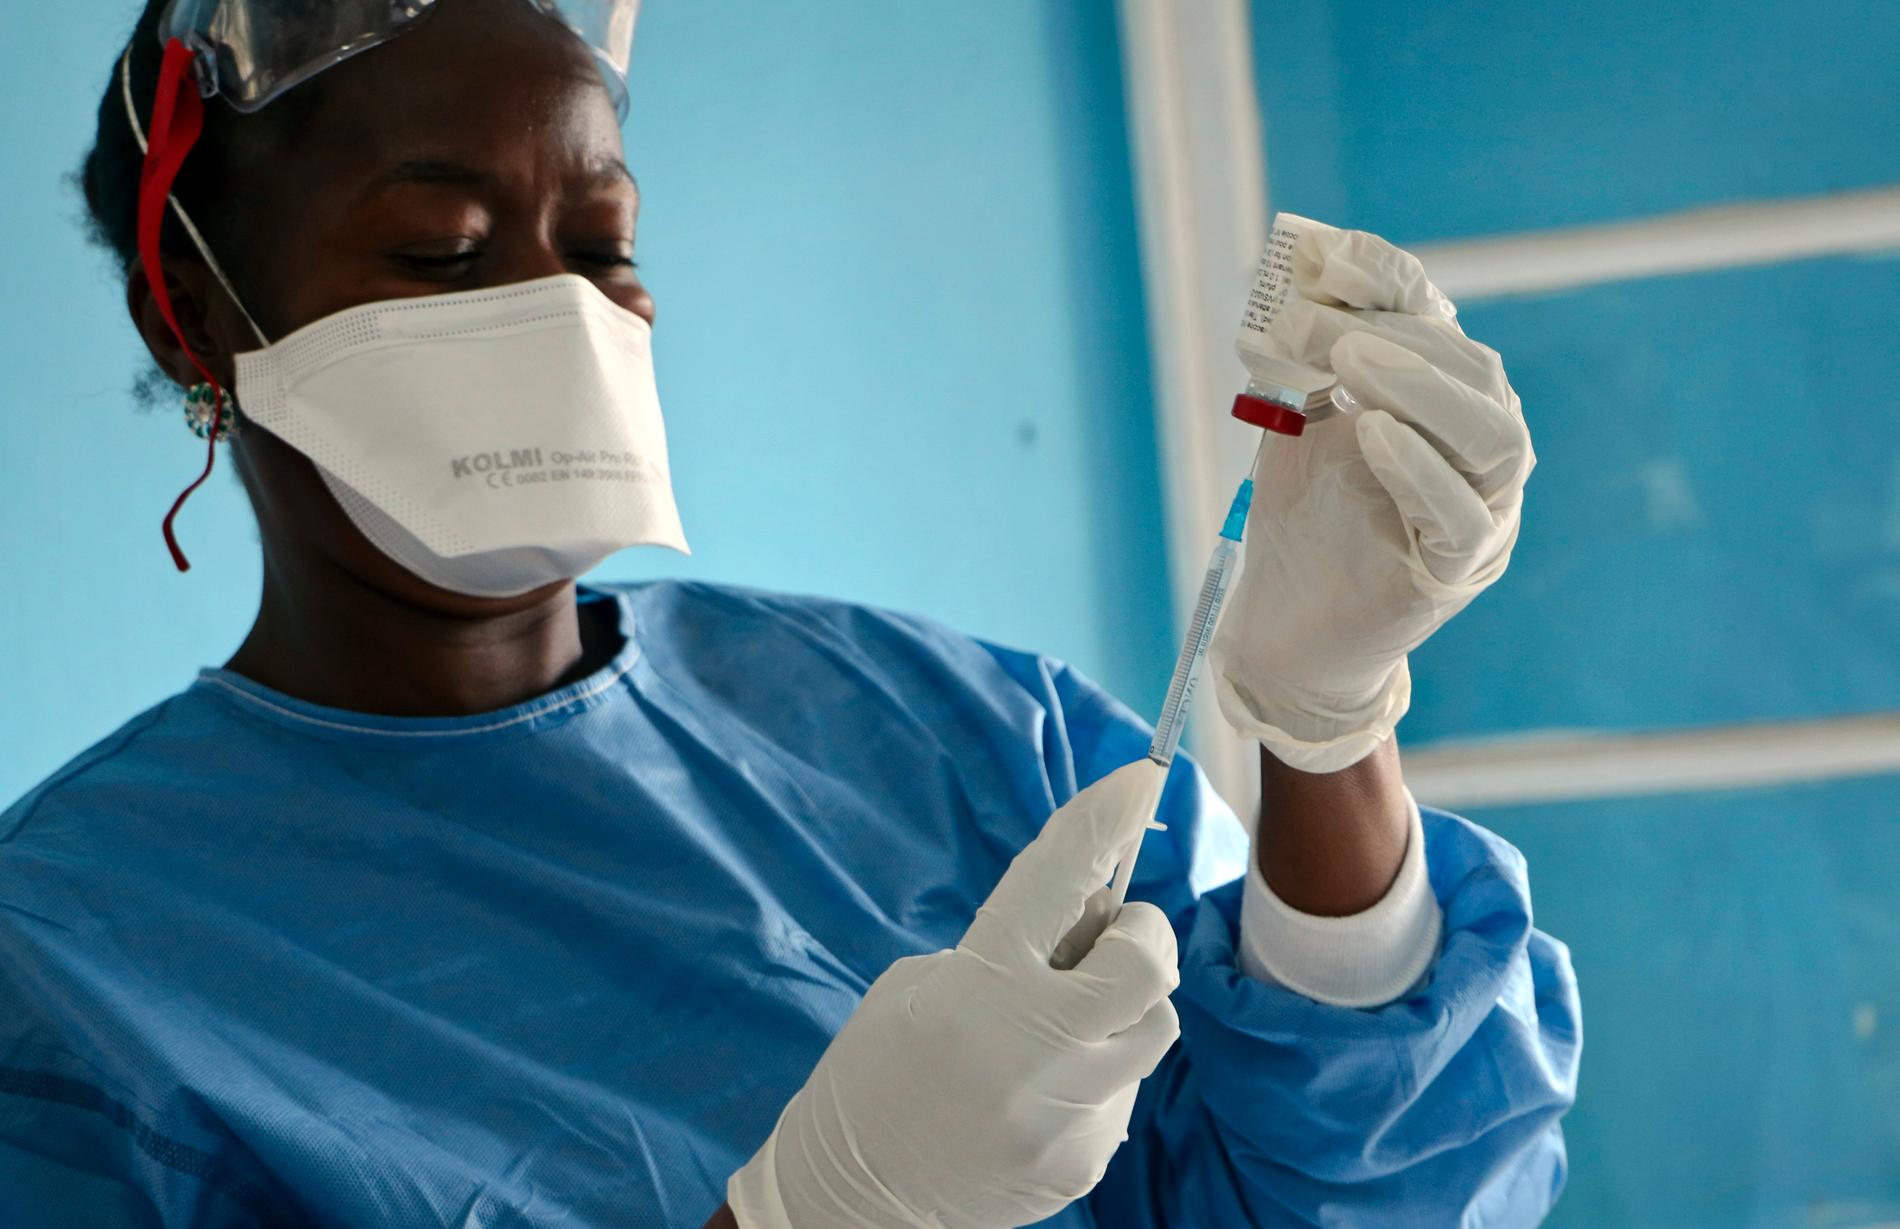 Ebolavaccinet är en bidragande orsak till att det pågående utbrottet av blödarfebers i Kongo-Kinshasa inte exploderat. Bilden är från maj 2019.